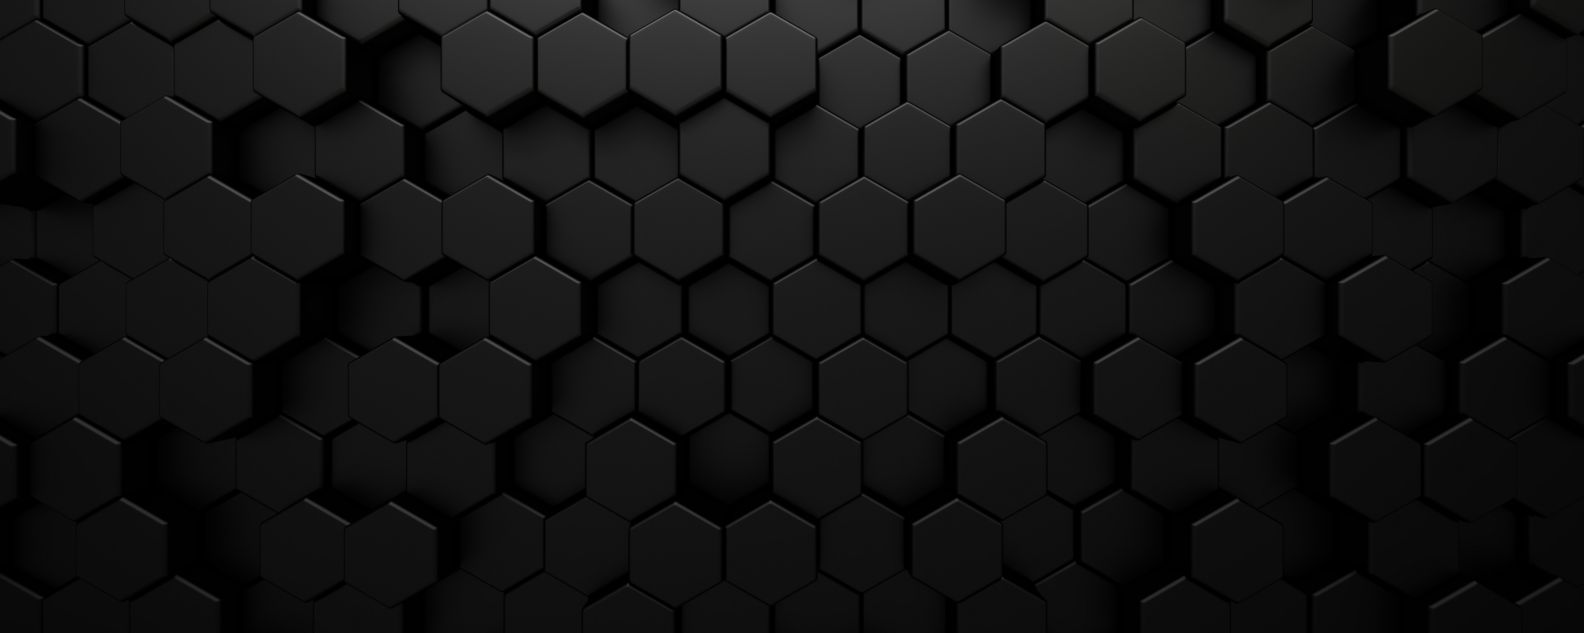 textura de patrón negro con imágenes hexagonales